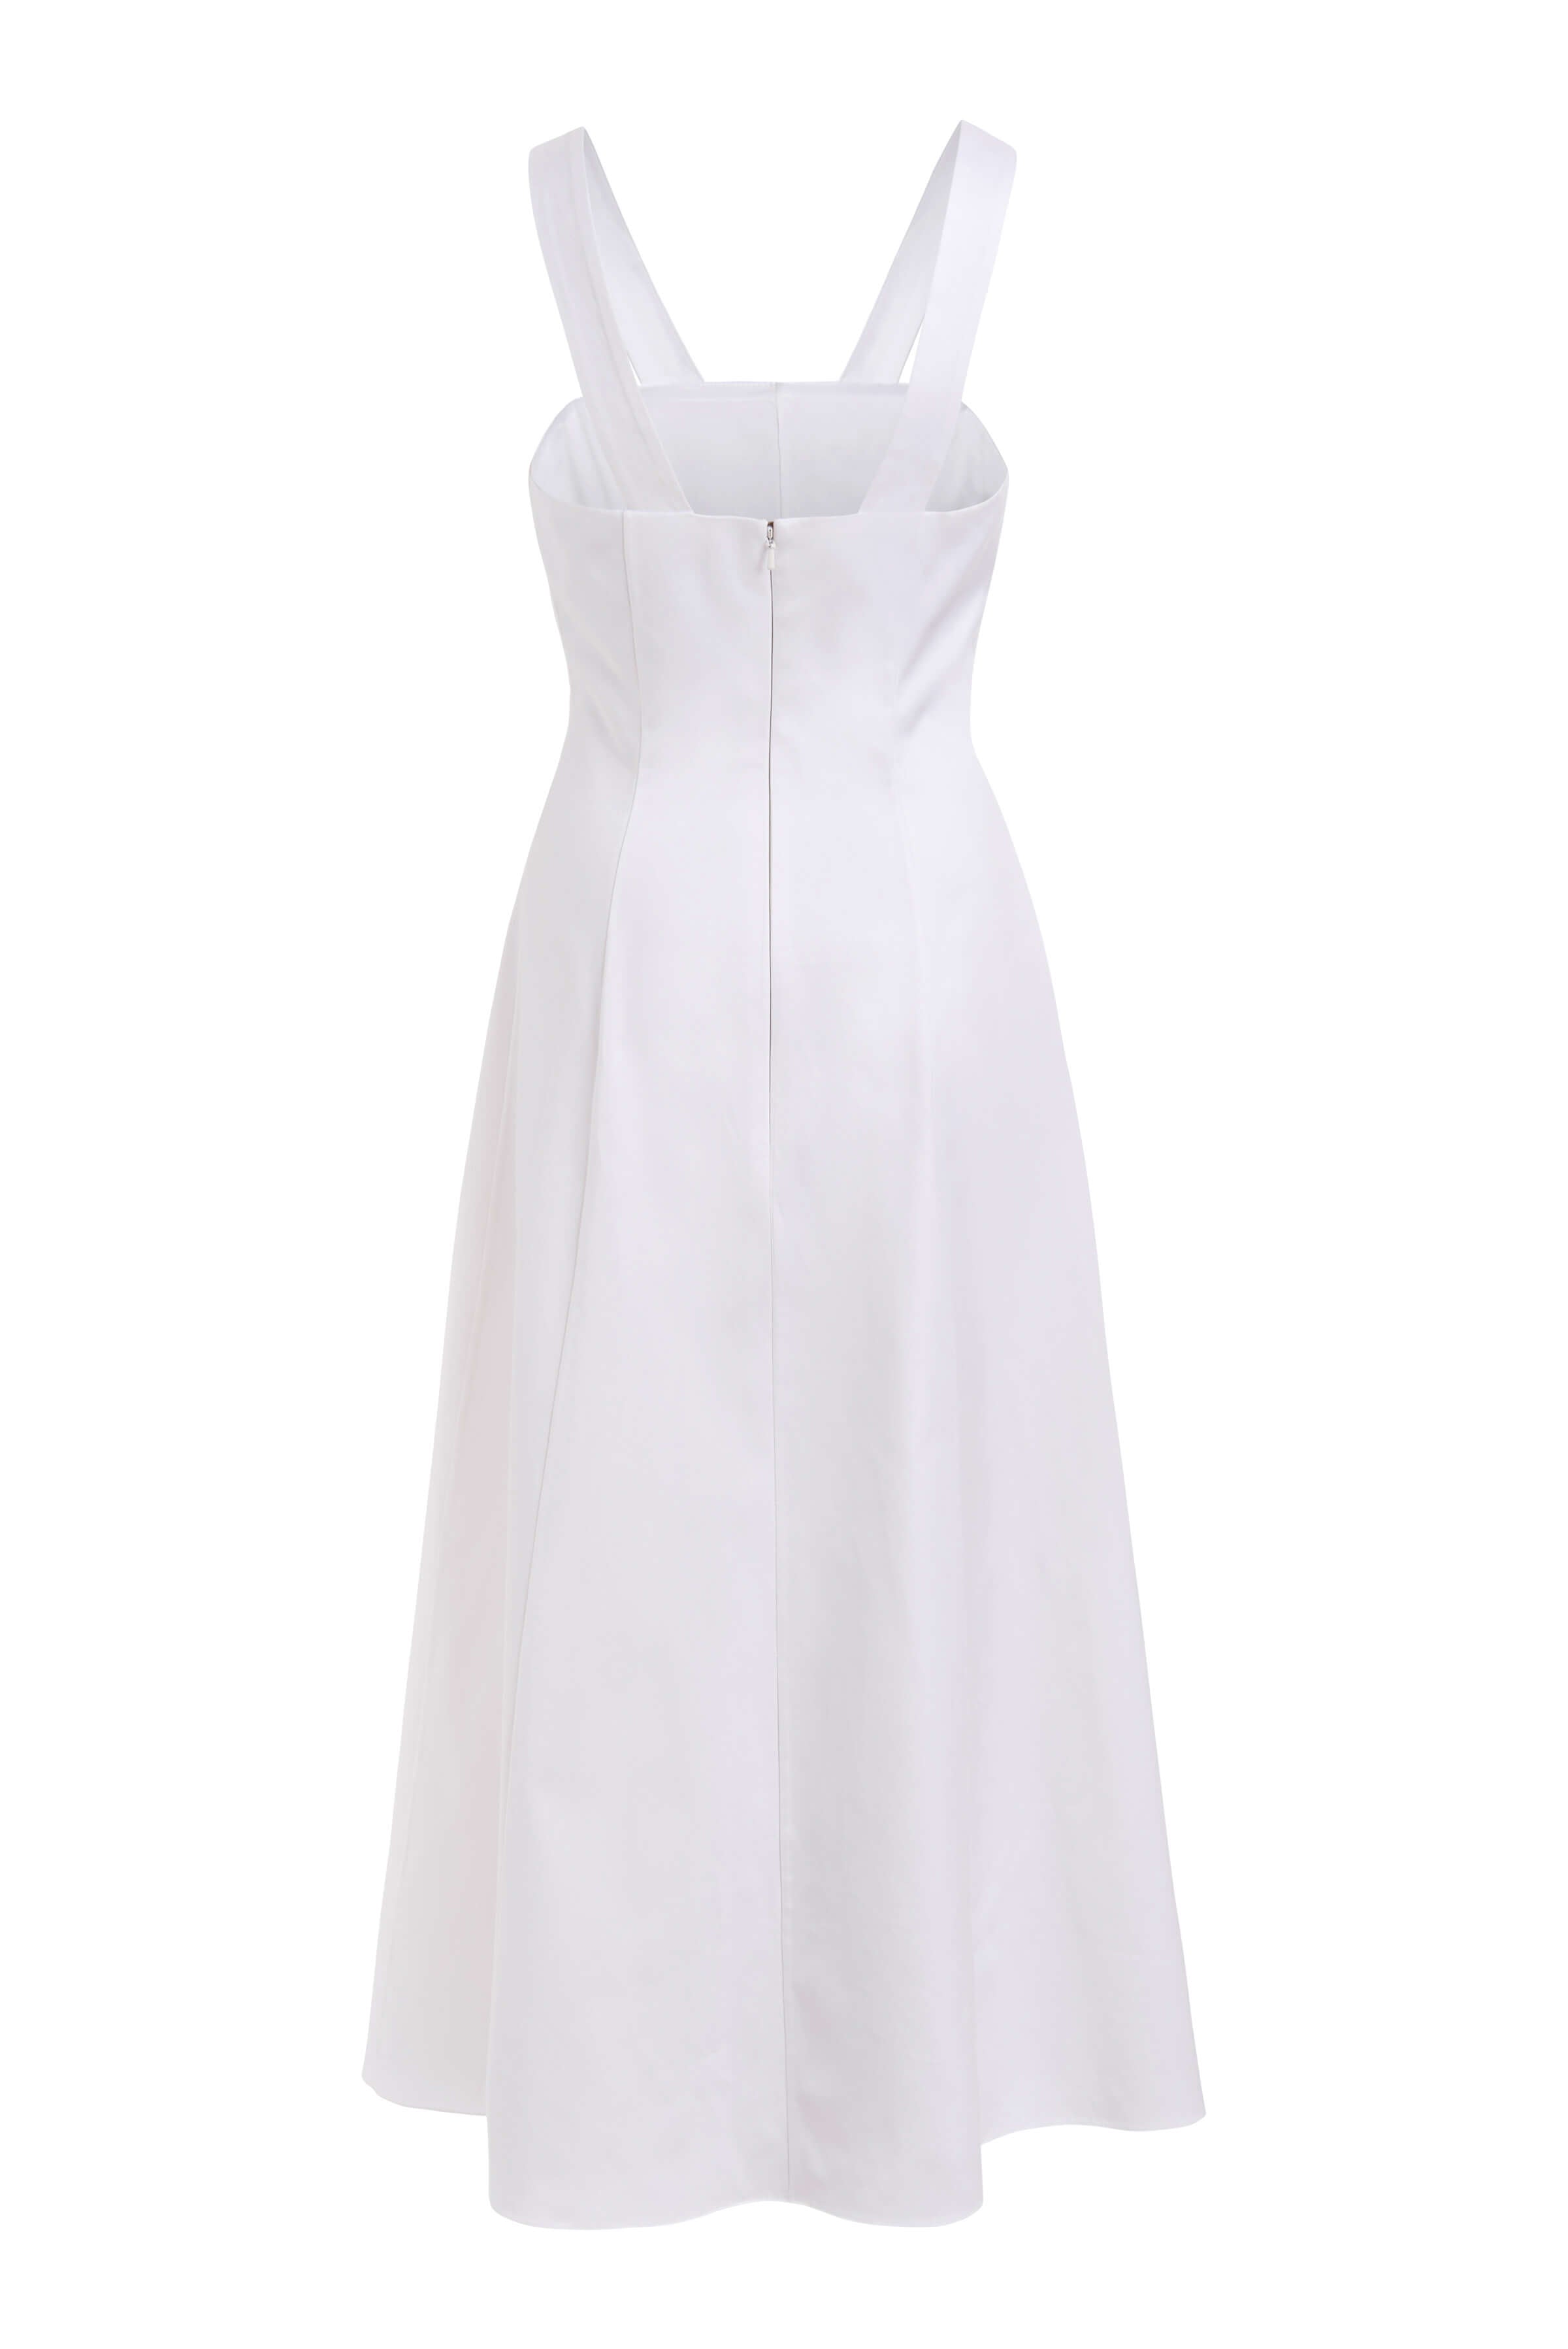 Birdie White Cotton A-Line Midi Dress